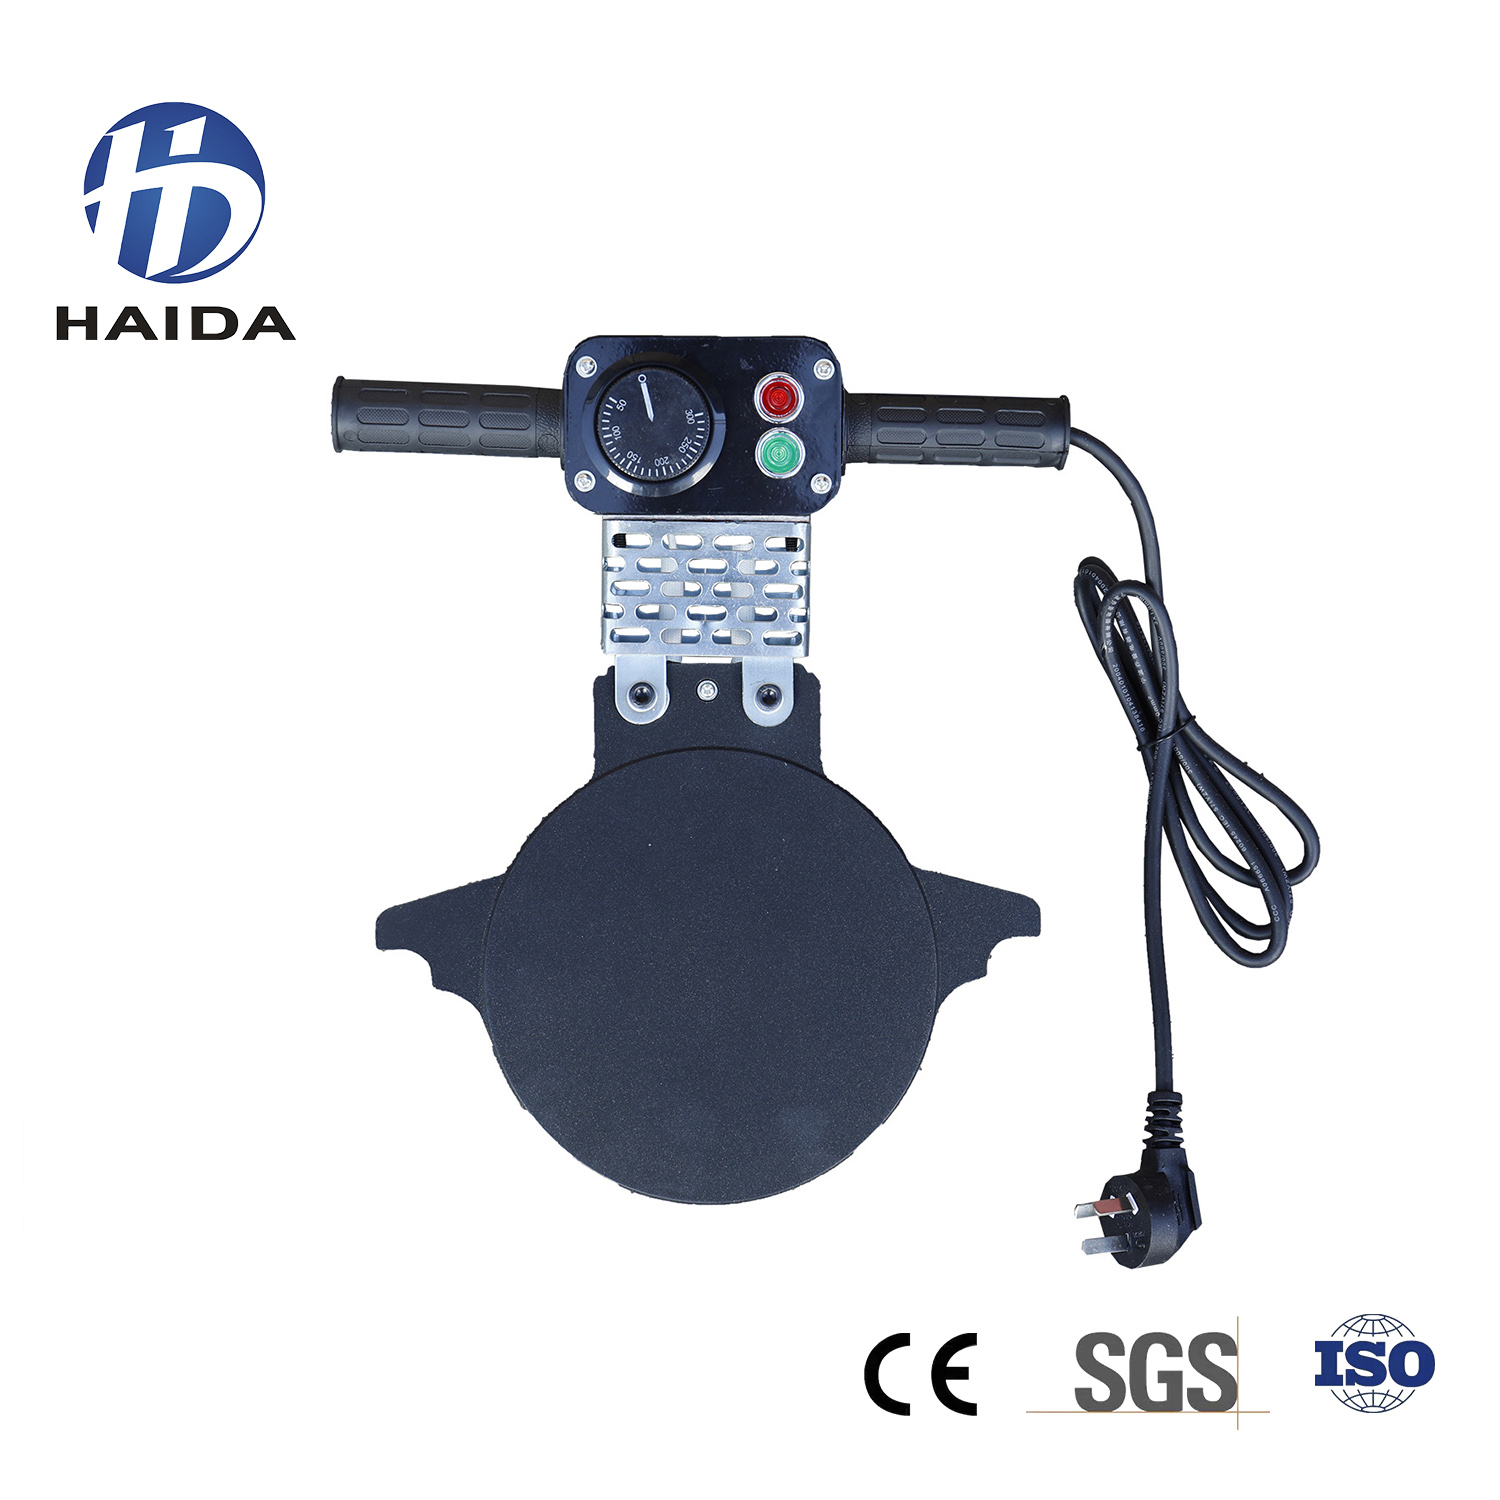 HD-ST160 BUTT FUSION WELDING MACHINE